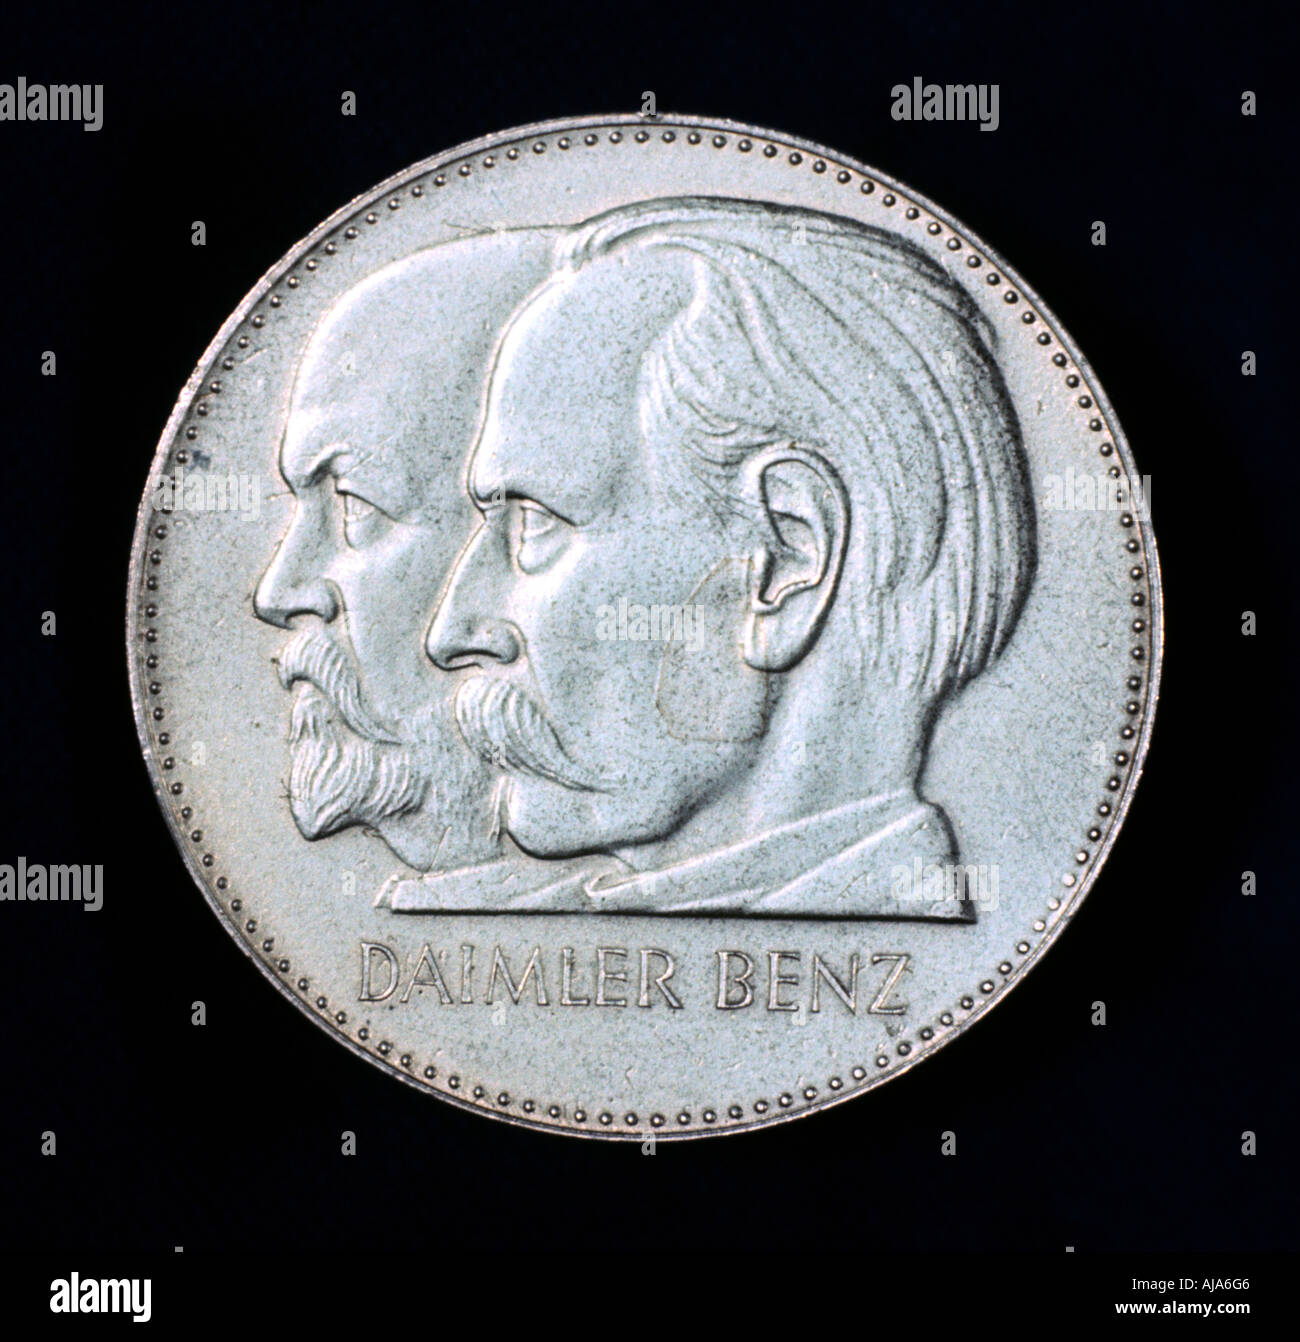 Gottlieb Daimler et Karl Benz, pionniers de l'industrie automobile allemande, 1961. Artiste : Inconnu Banque D'Images